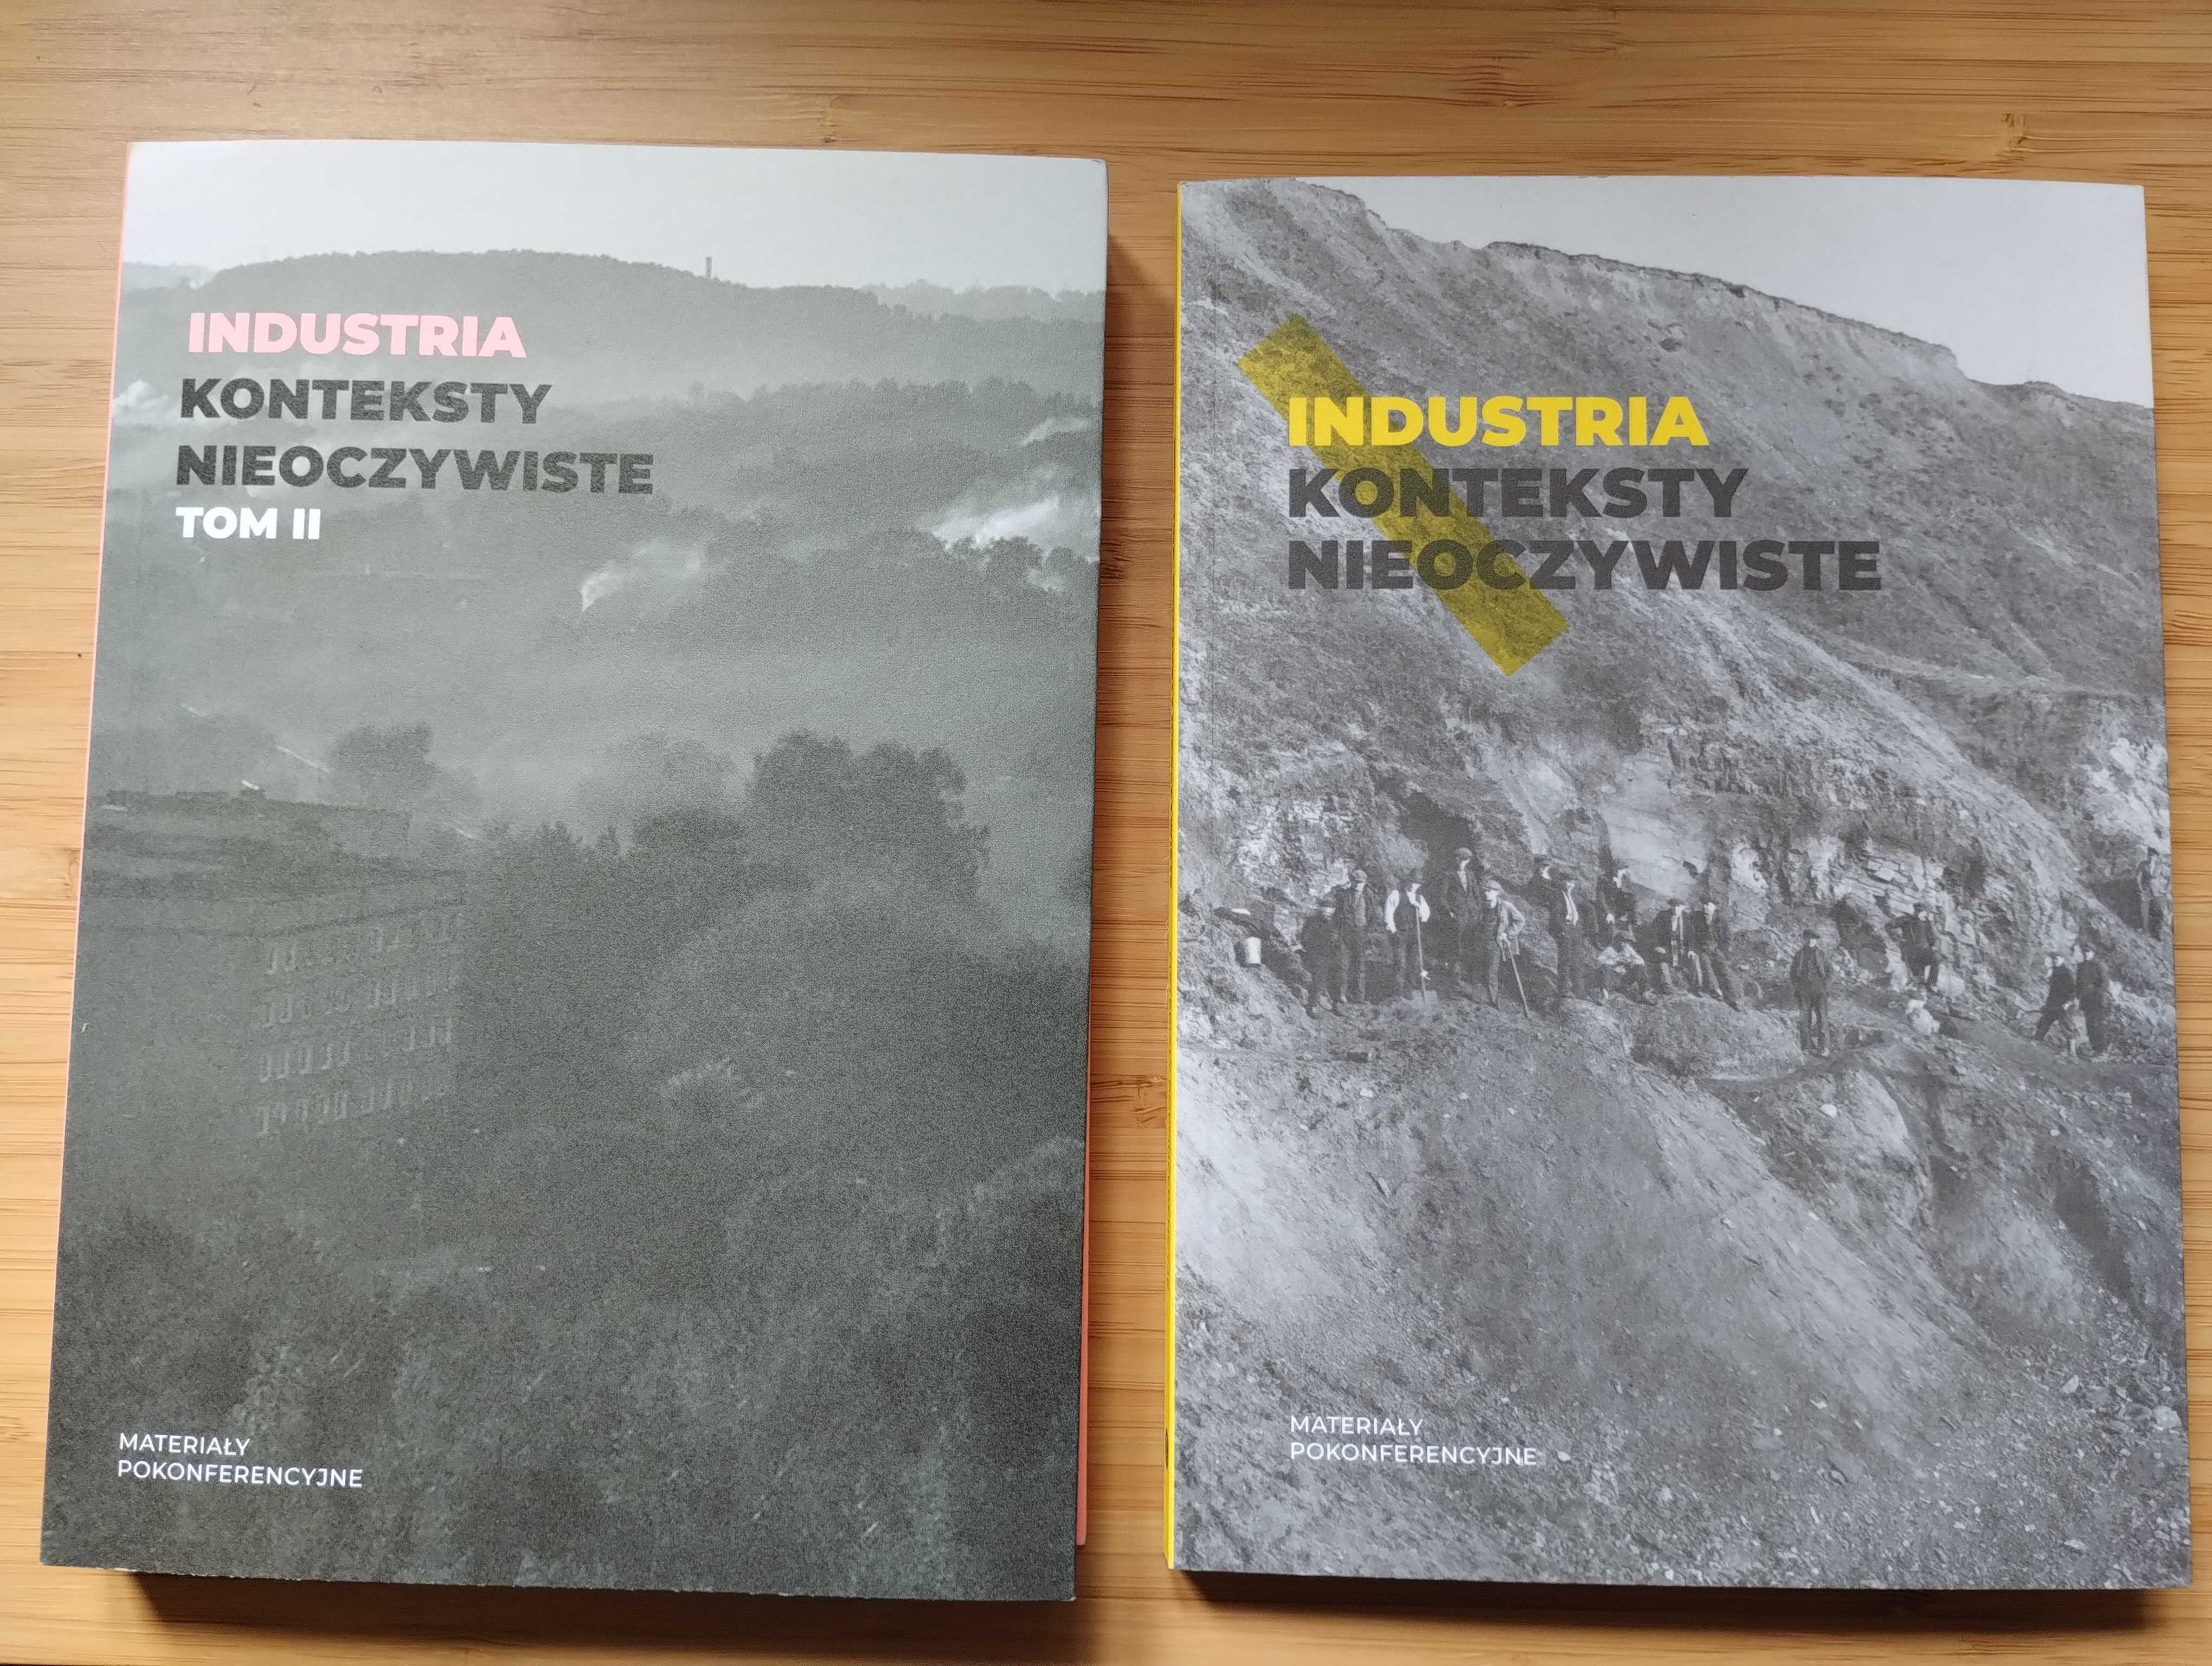 Industria.Materiały pokonferencyjne tom I i II. Muzeum Śląskie